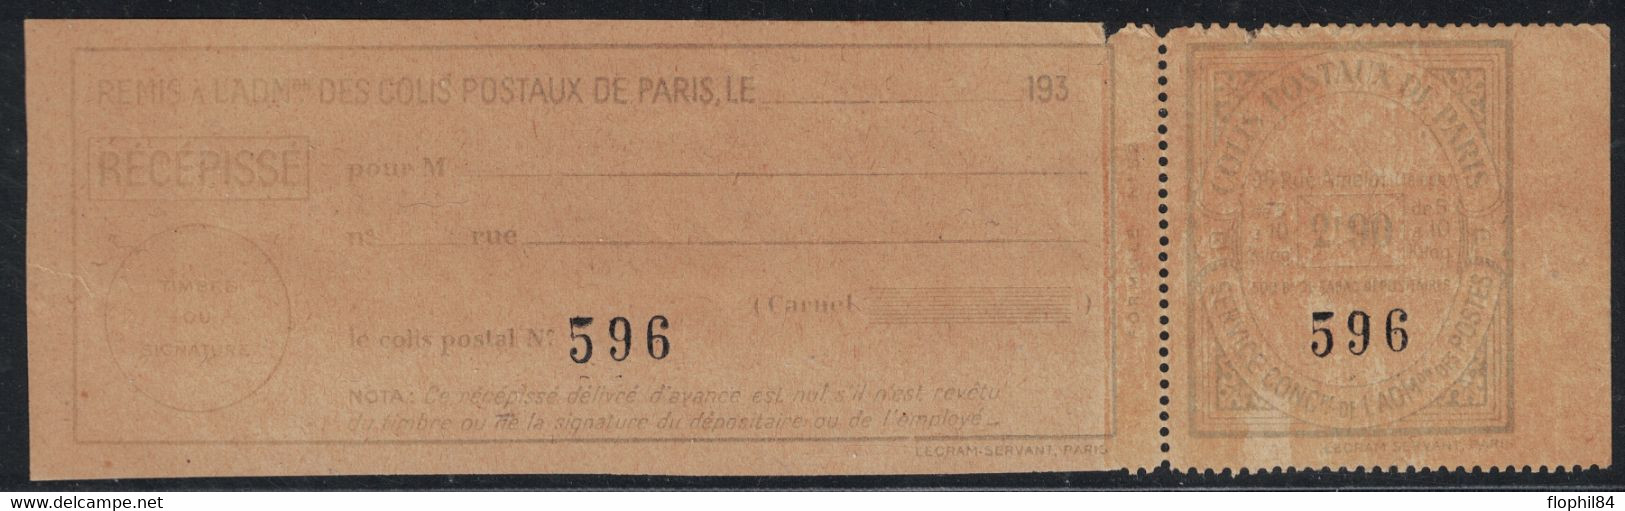 COLIS POSTAUX DE PARIS POUR PARIS - N°153 - 2F90 BLEU CLAIR SUR PAPIER JAUNE (NON SIGNALE ) - COTE DU NORMAL 22€. - Nuovi